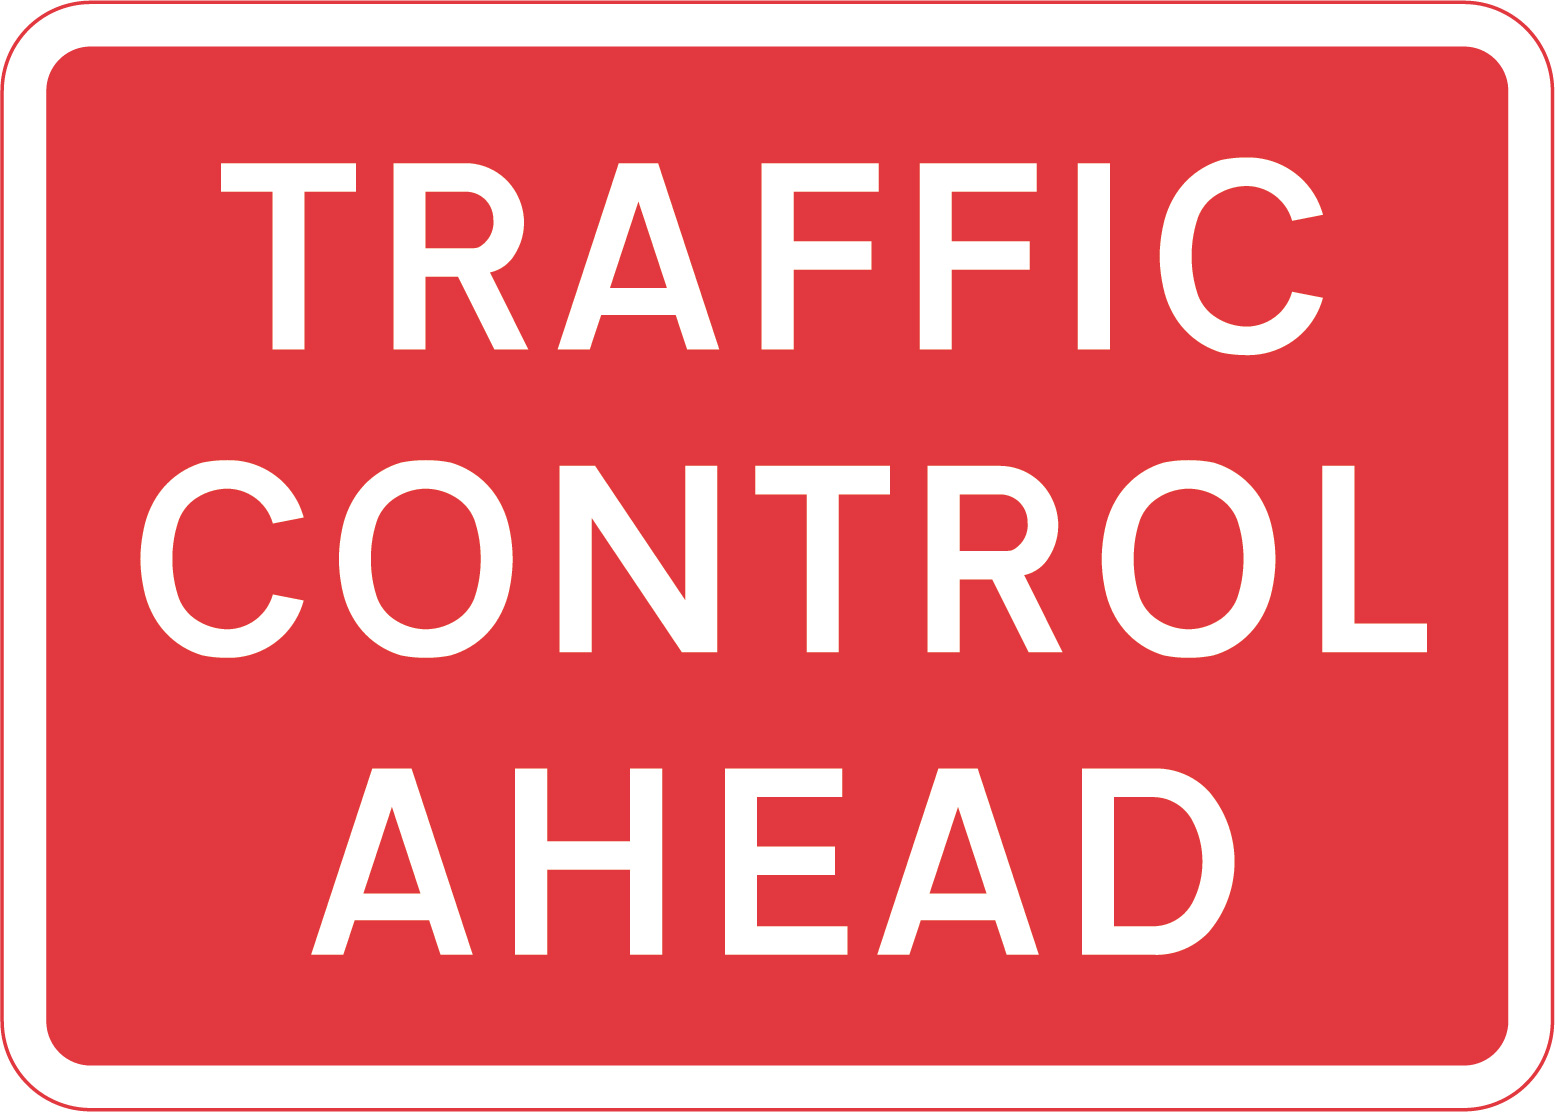 Traffic control ahead